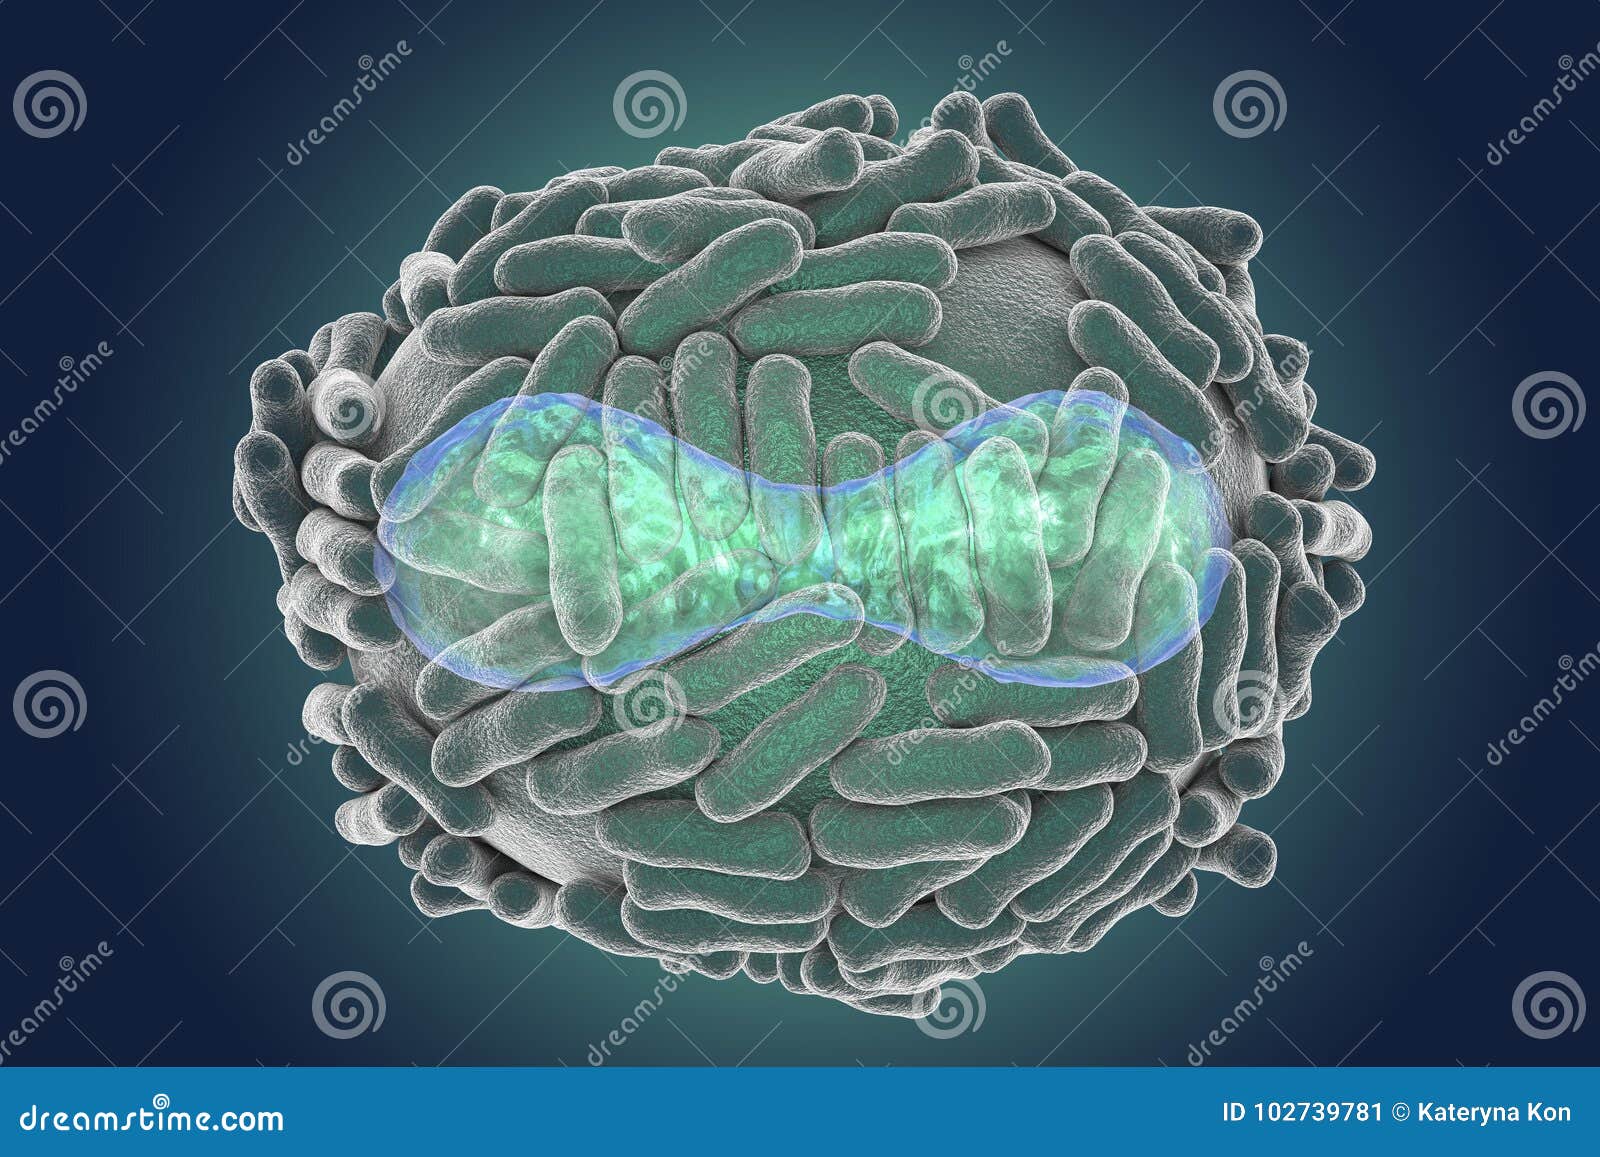 variola virus 